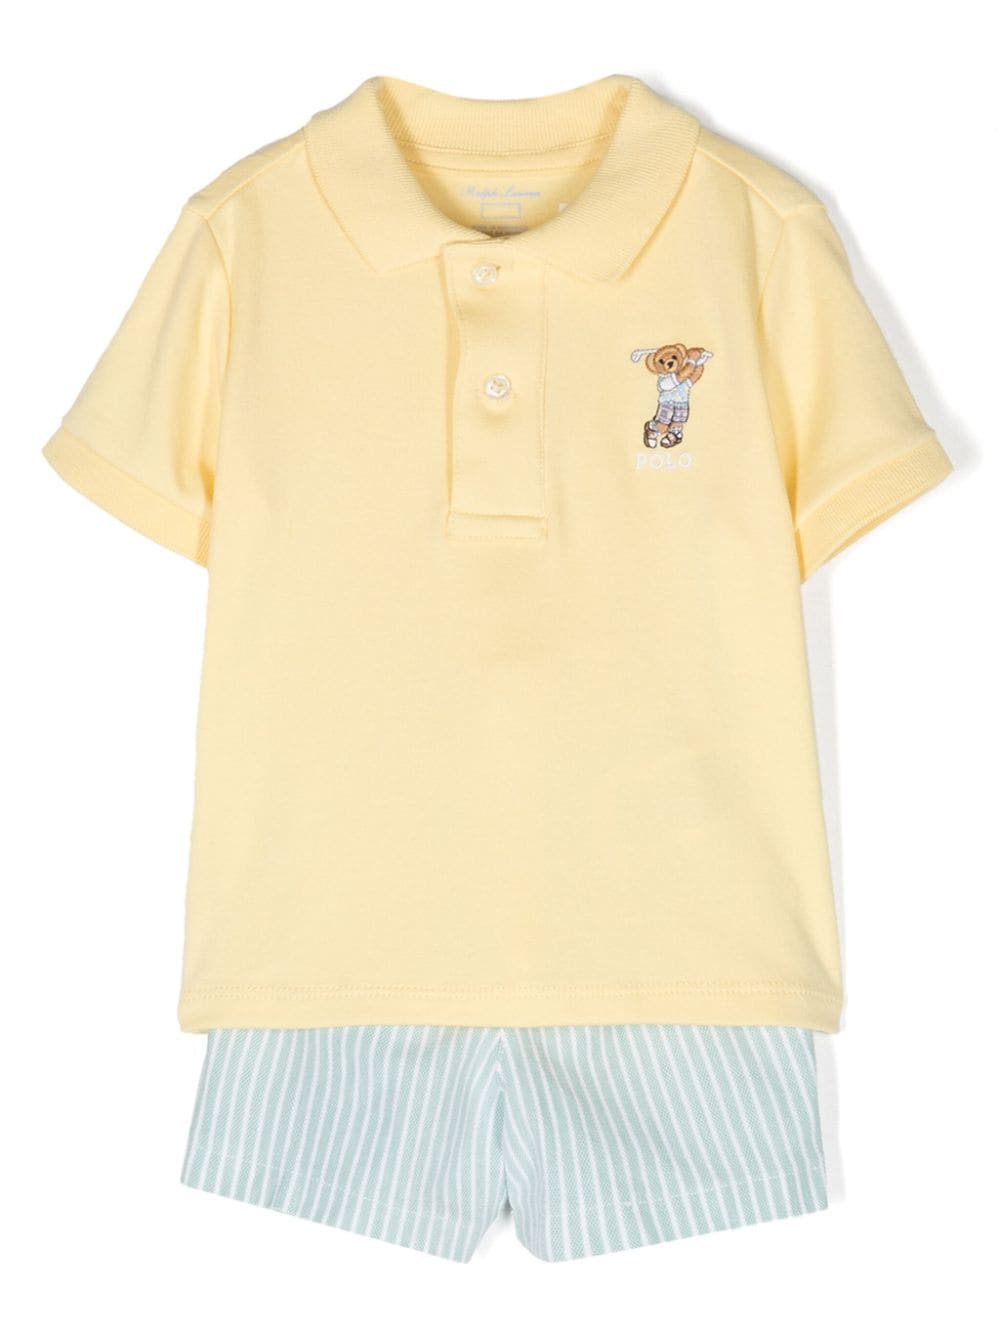 Completo giallo e azzurro per neonato con logo